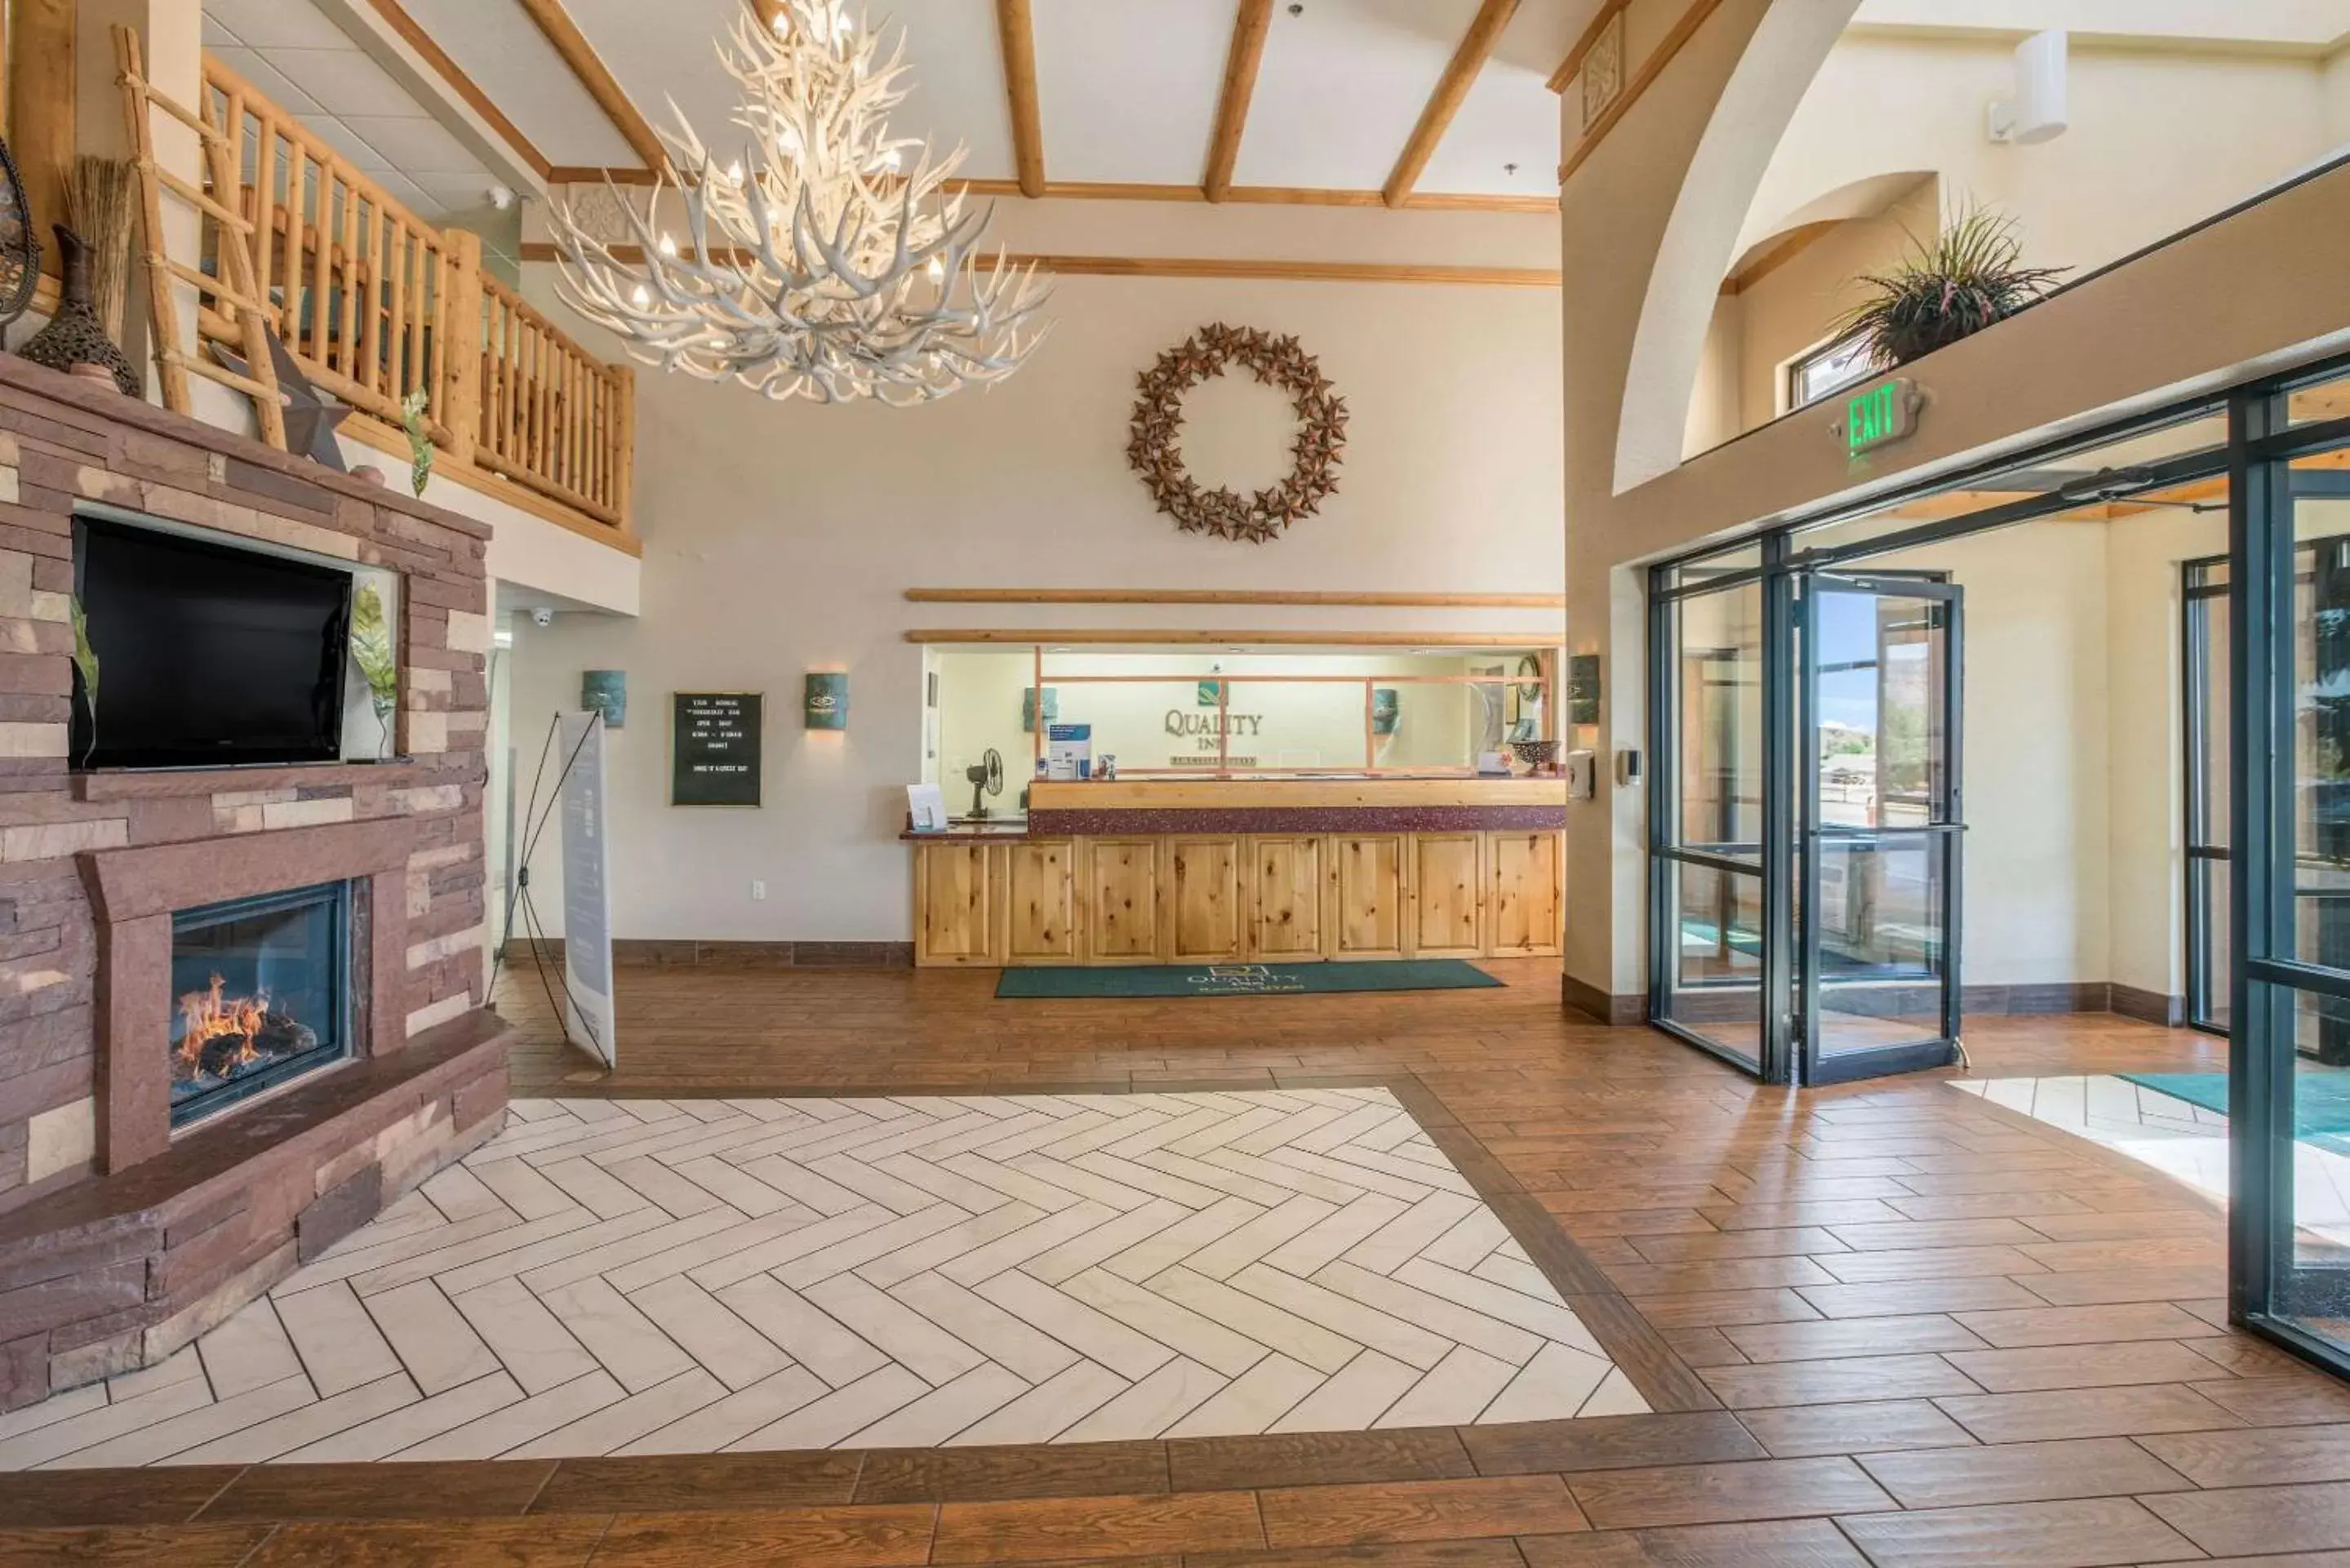 Lobby or reception in Quality Inn Kanab National Park Area